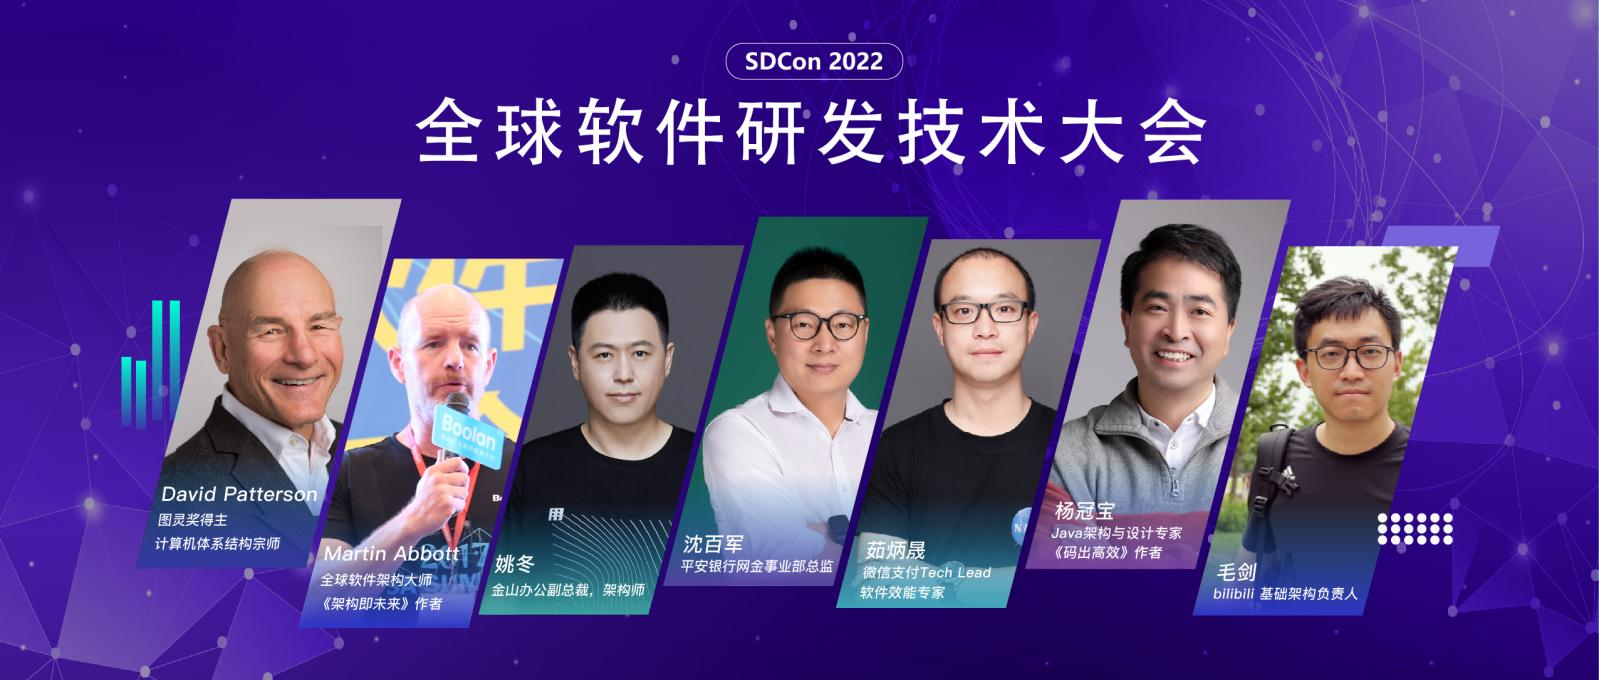 2022全球软件研发技术大会12月相约上海，图灵奖得主David Patterson将出席